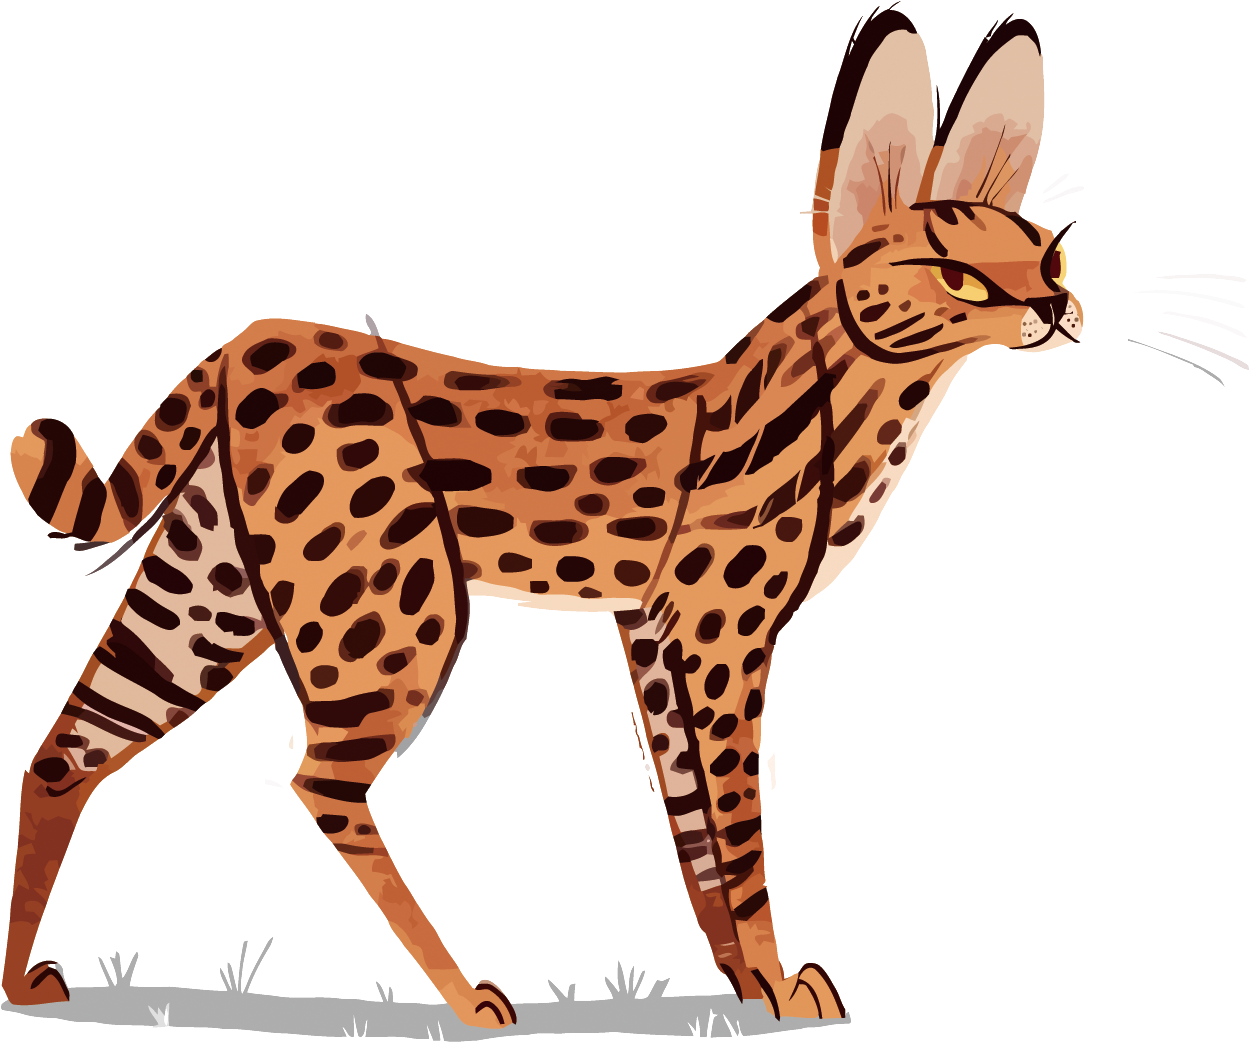 Ocelot Cheetah Leopard Serval Illustration - Serval Deviantart (1500x1170)